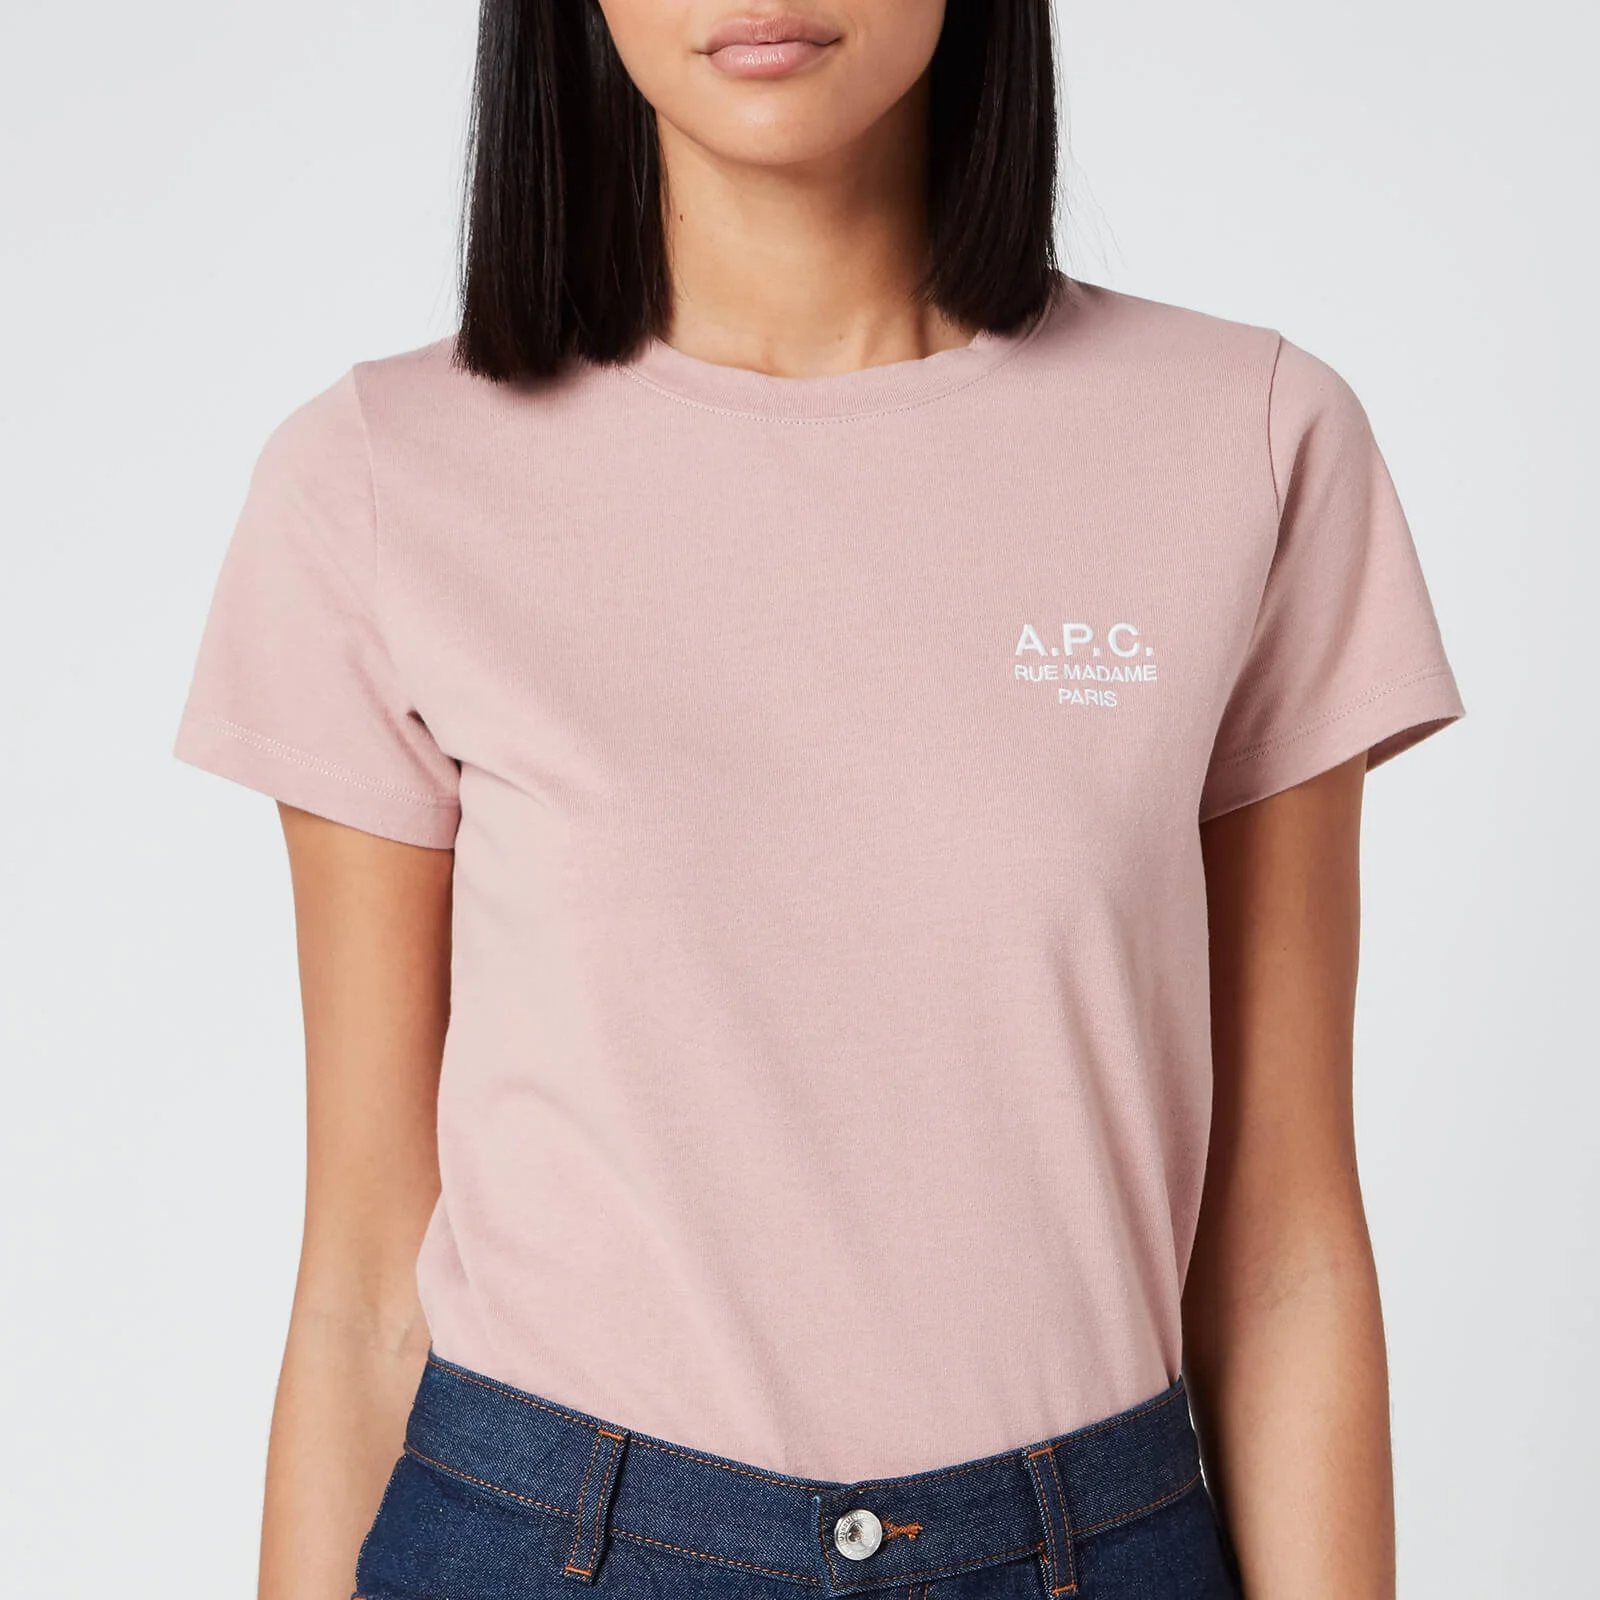 A.P.C. Women's Denise T-Shirt - Fae Vieux Rose Image 1